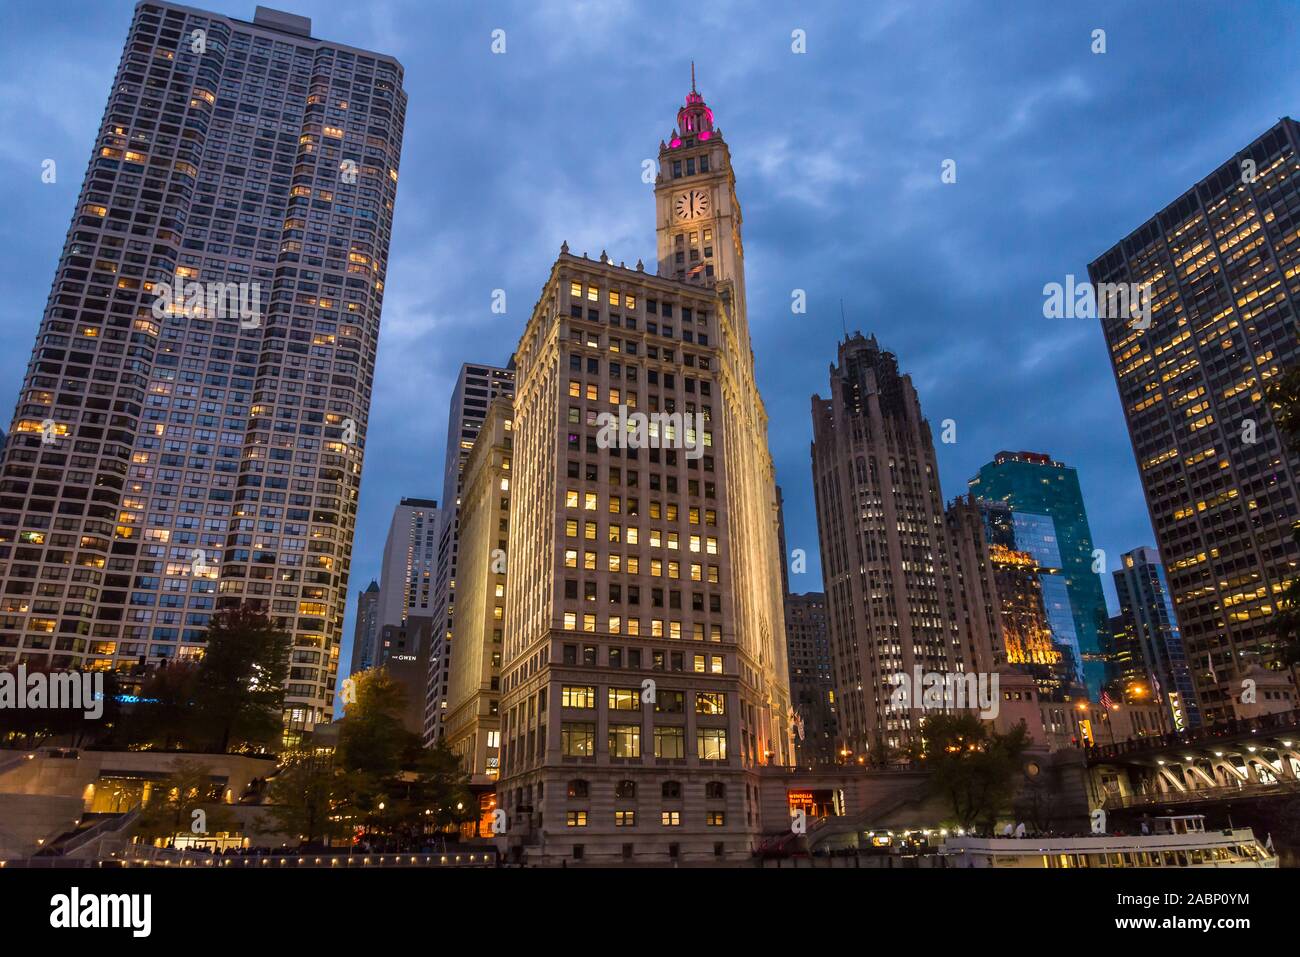 Bâtiments le long de la rivière Chicago allumé, le Wrigley Building, un gratte-ciel historique de 1924 et de l'horloge, la nuit, Chicago, Illinois, États-Unis Banque D'Images